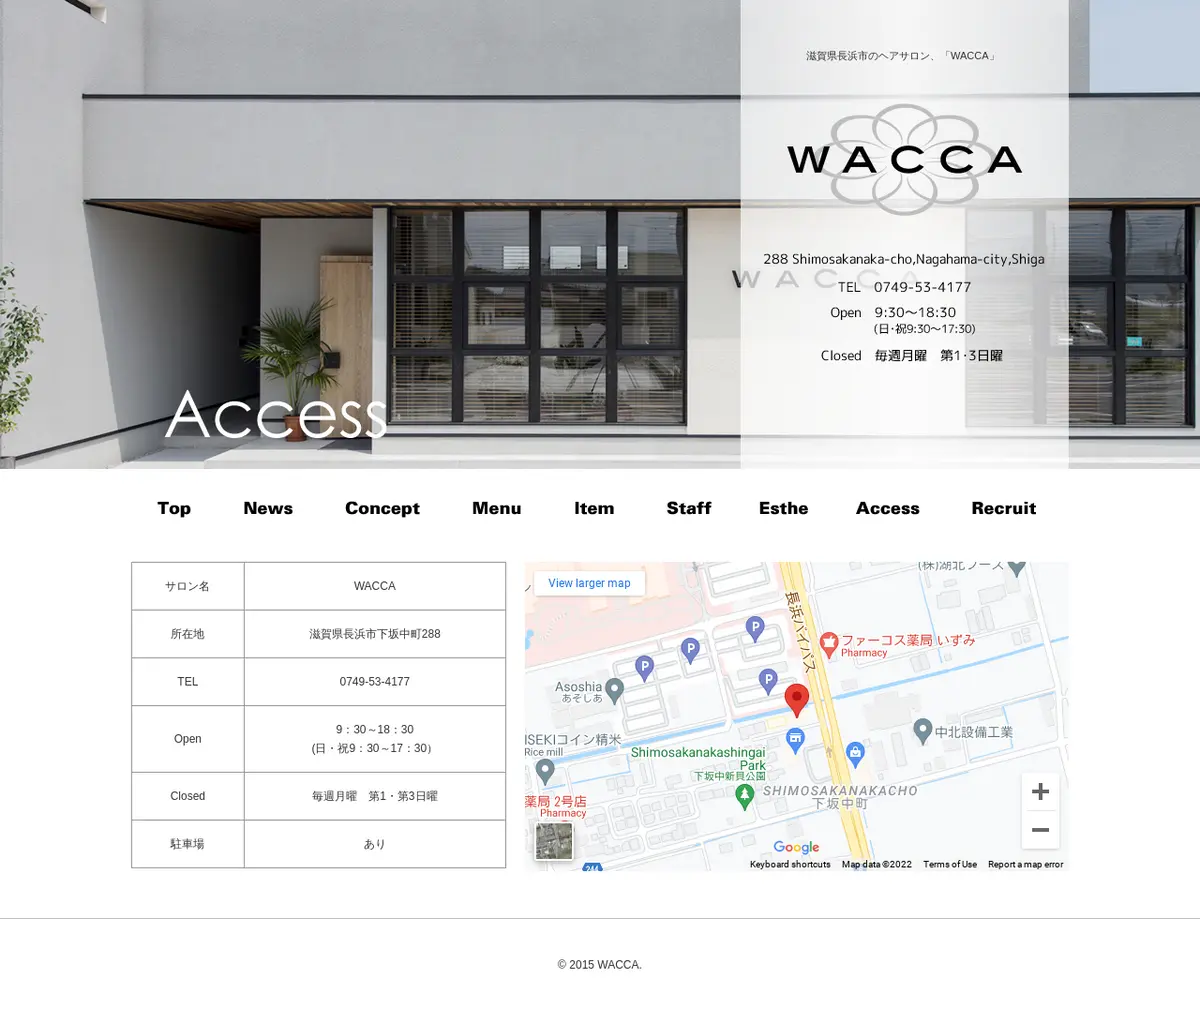 キャプチャ画面 会社名:WACCAプロジェクト名:WACCA 画面名:アクセス・地図・マップ詳細 デバイス名:PCカテゴリ:美容・化粧・エステタグ:アクセス・地図・マップ詳細,PC